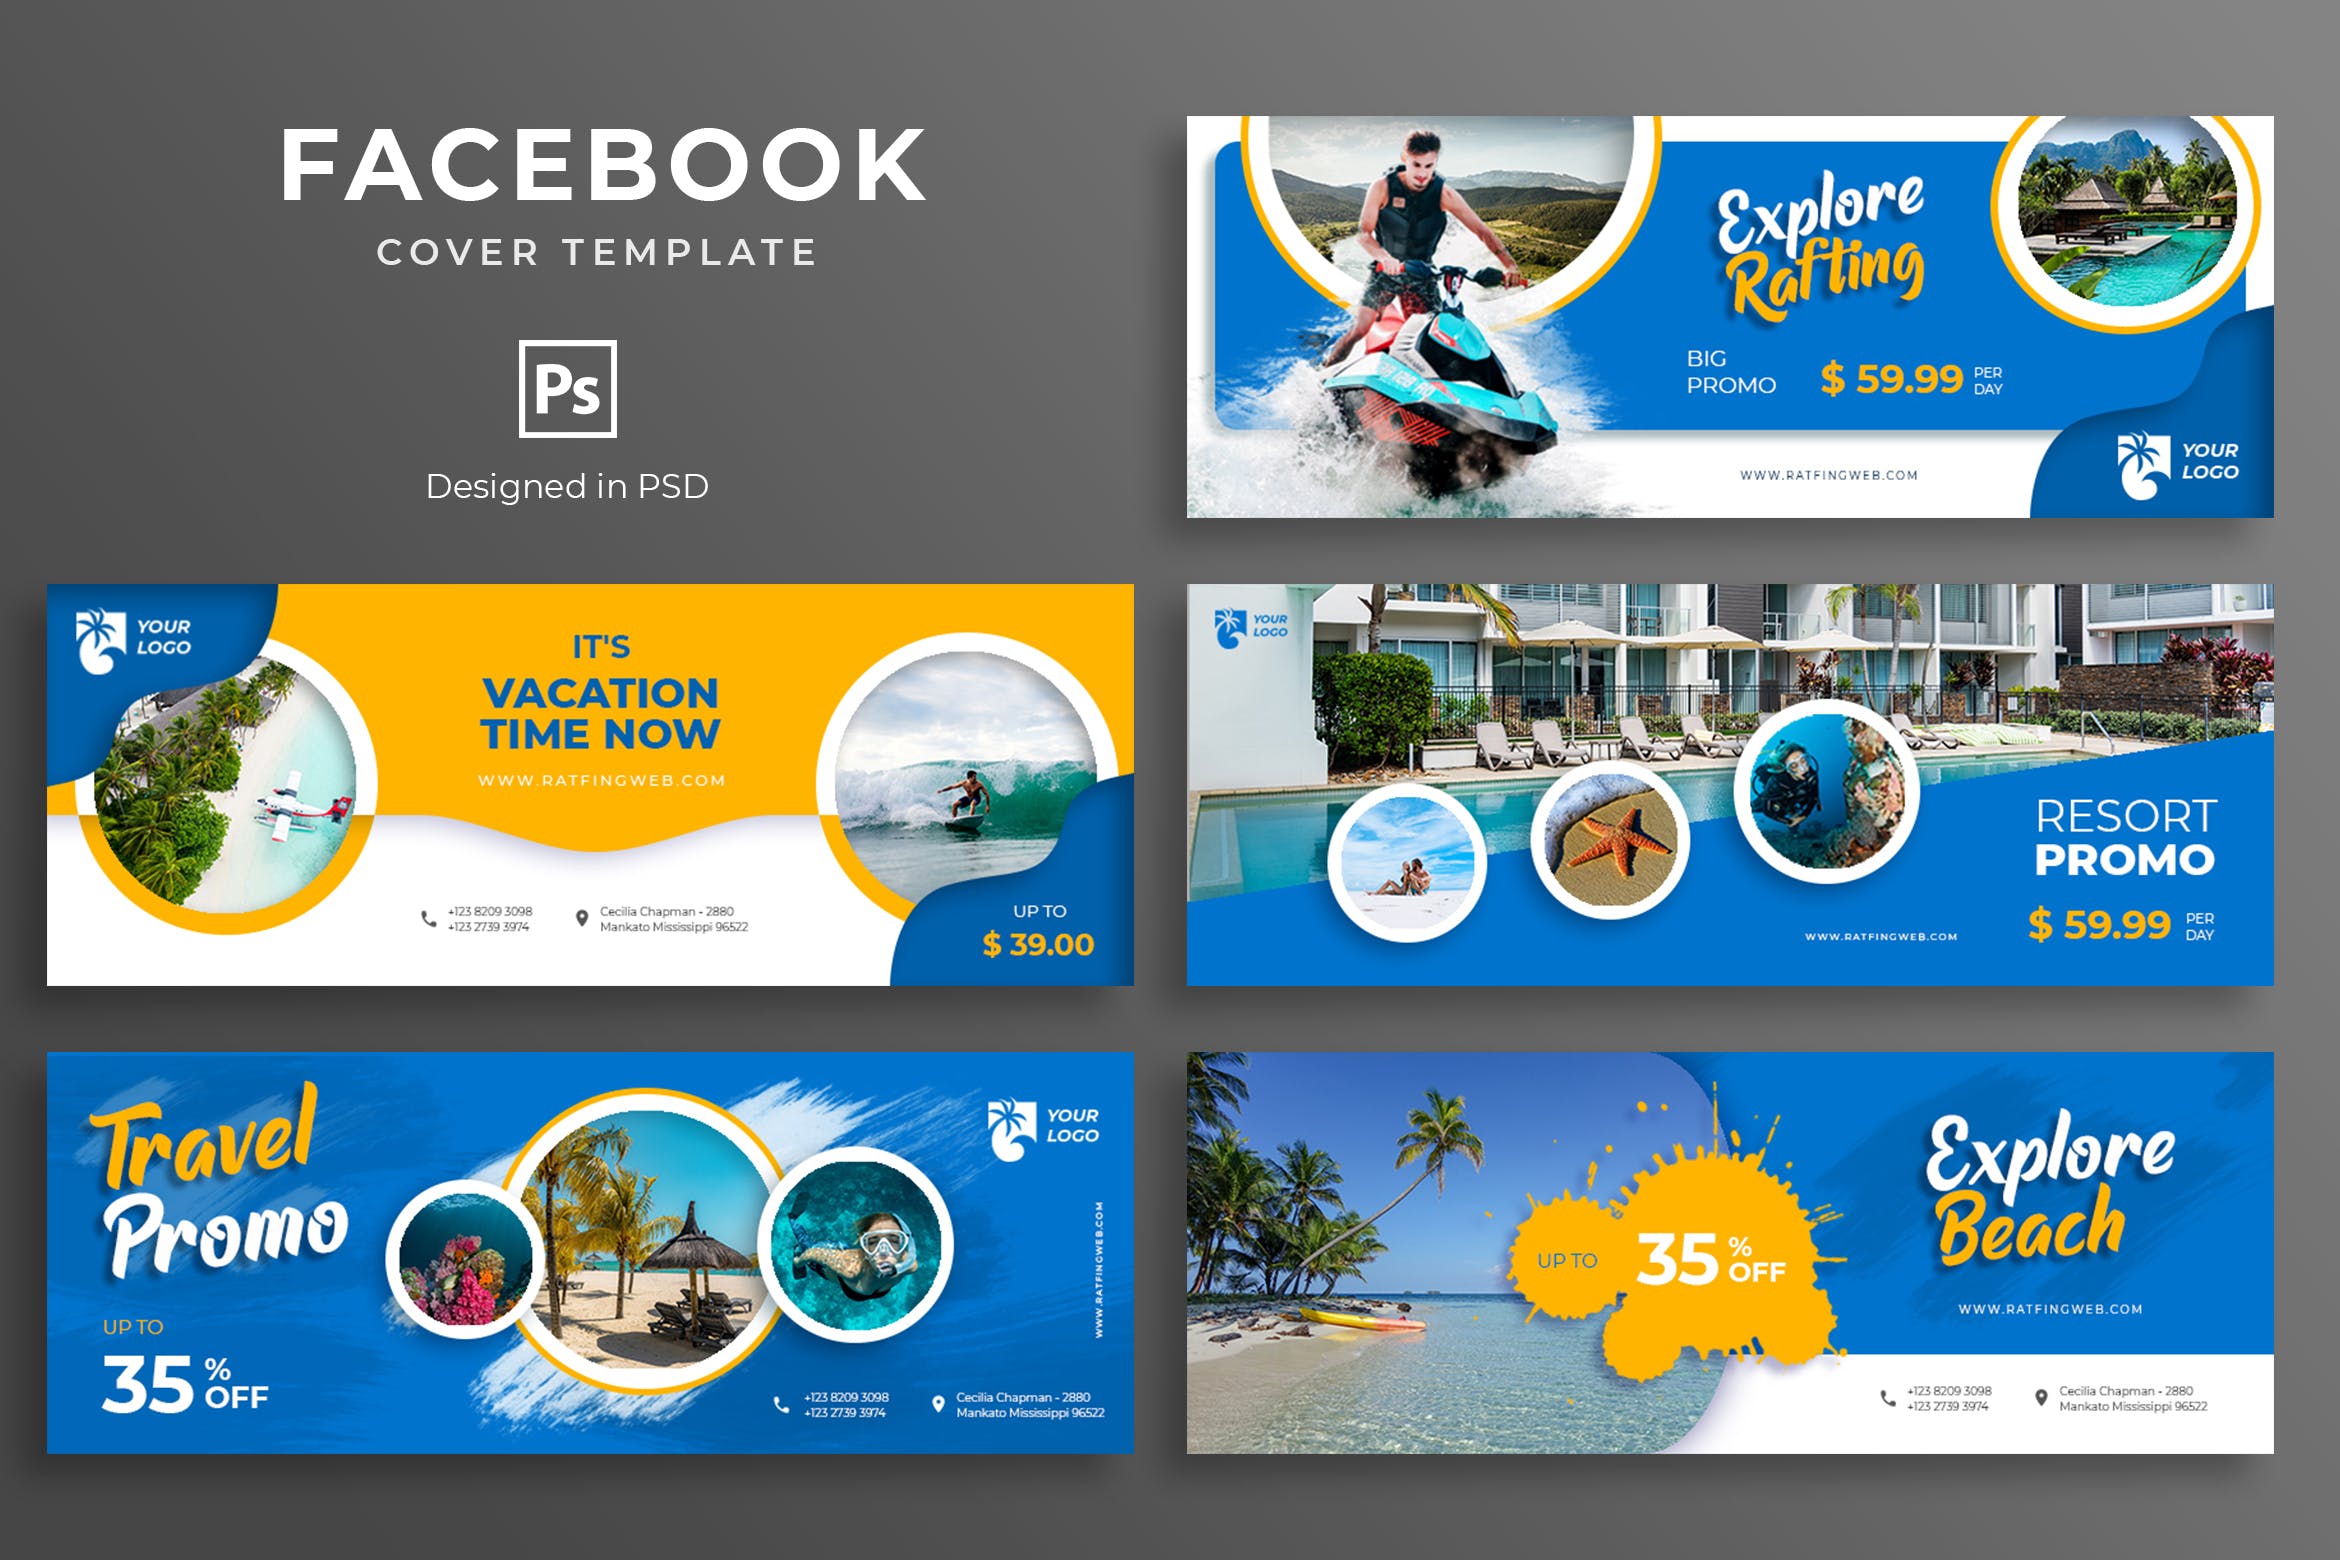 旅游景点推广Facebook主页封面设计模板素材库精选 Travel Facebook Cover Template插图